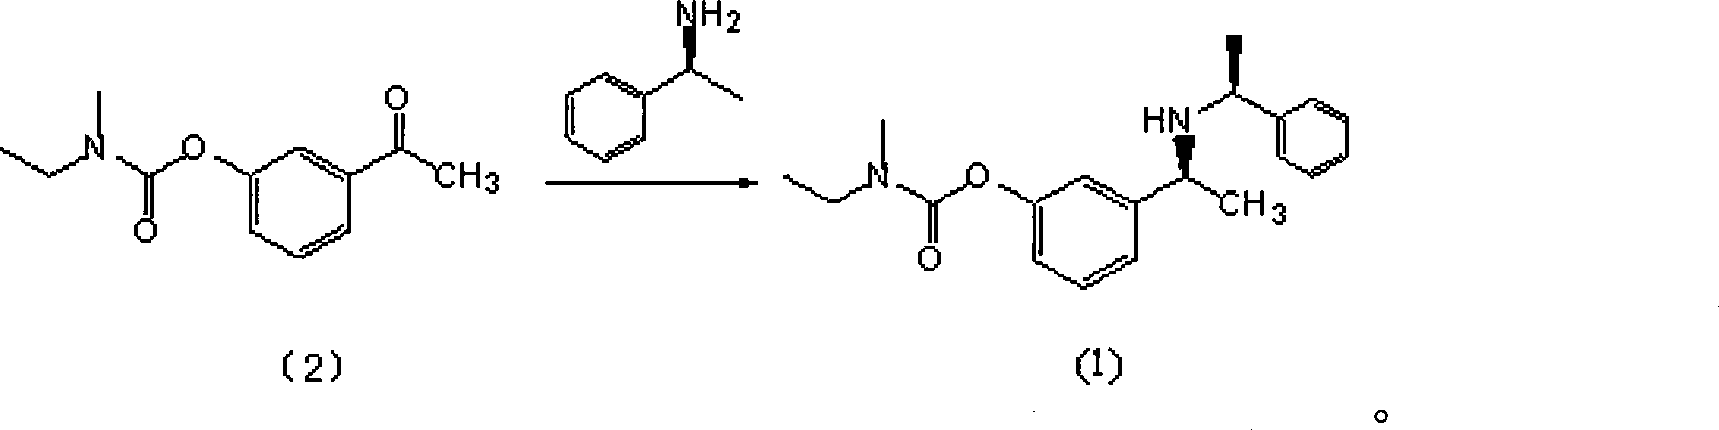 Rivastigmine intermediate preparation